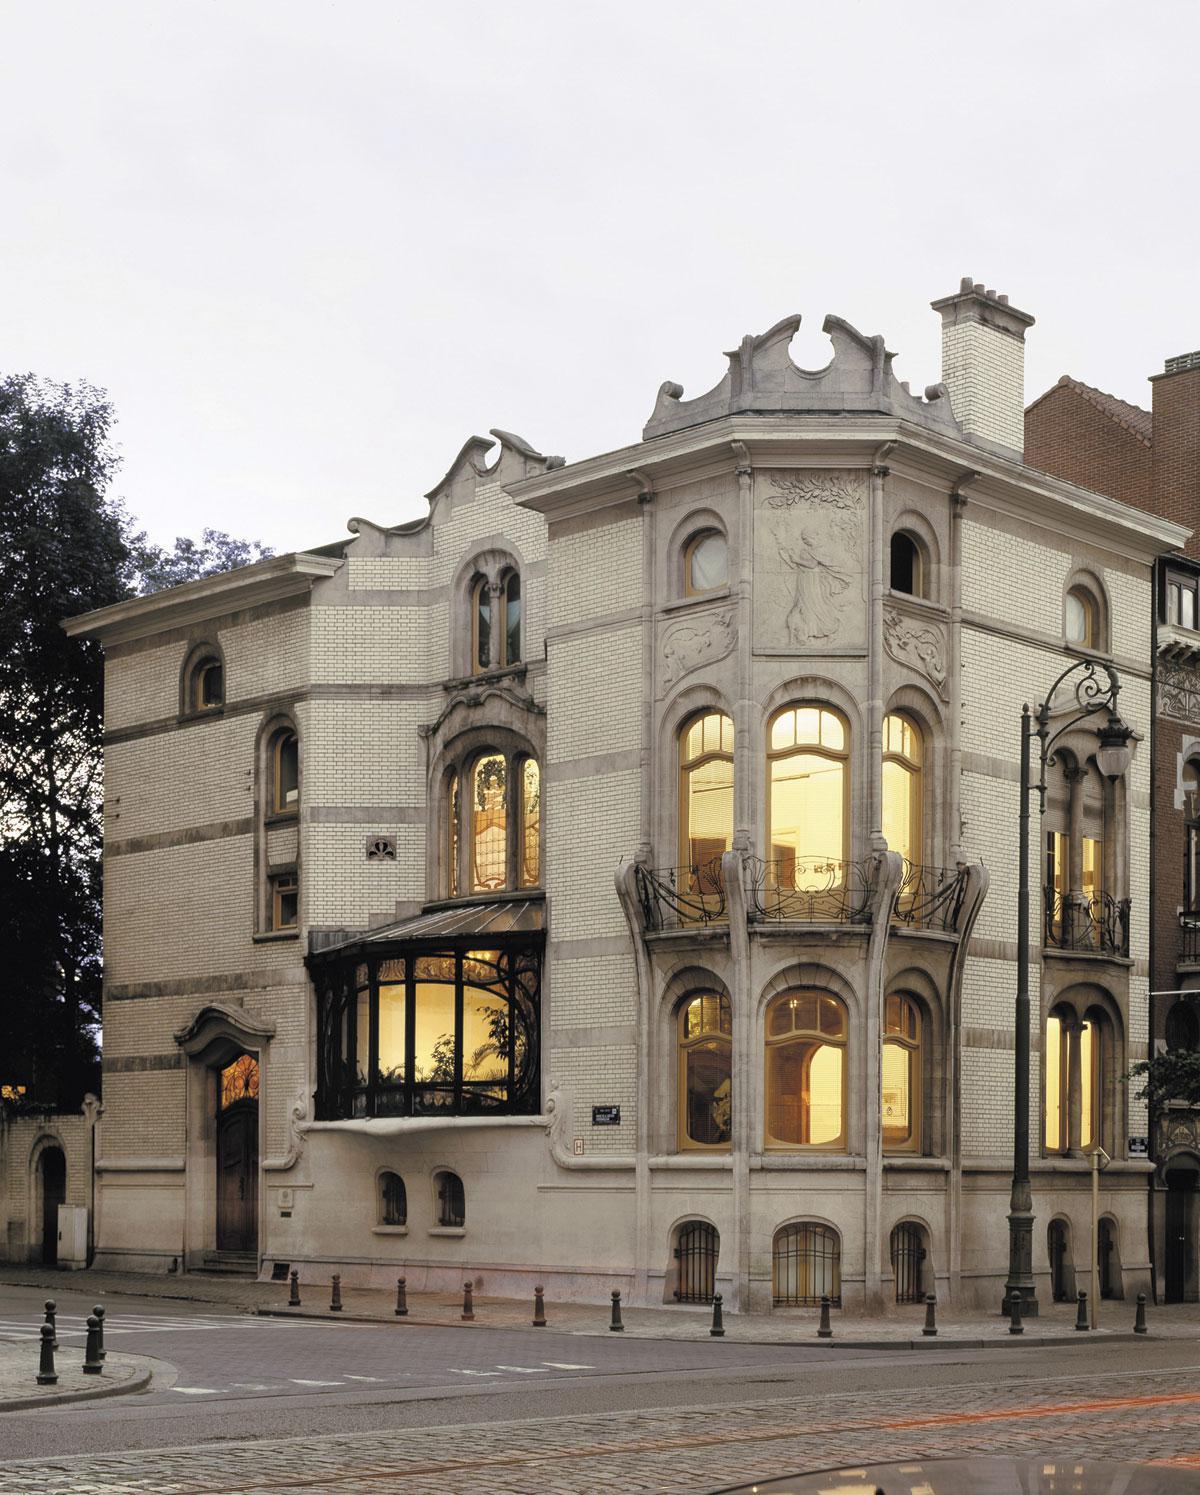 Het gerestaureerde Maison Hannon wordt op 1 juni ingehuldigd. Het wordt een architectuur- en museumcentrum. © David Plas